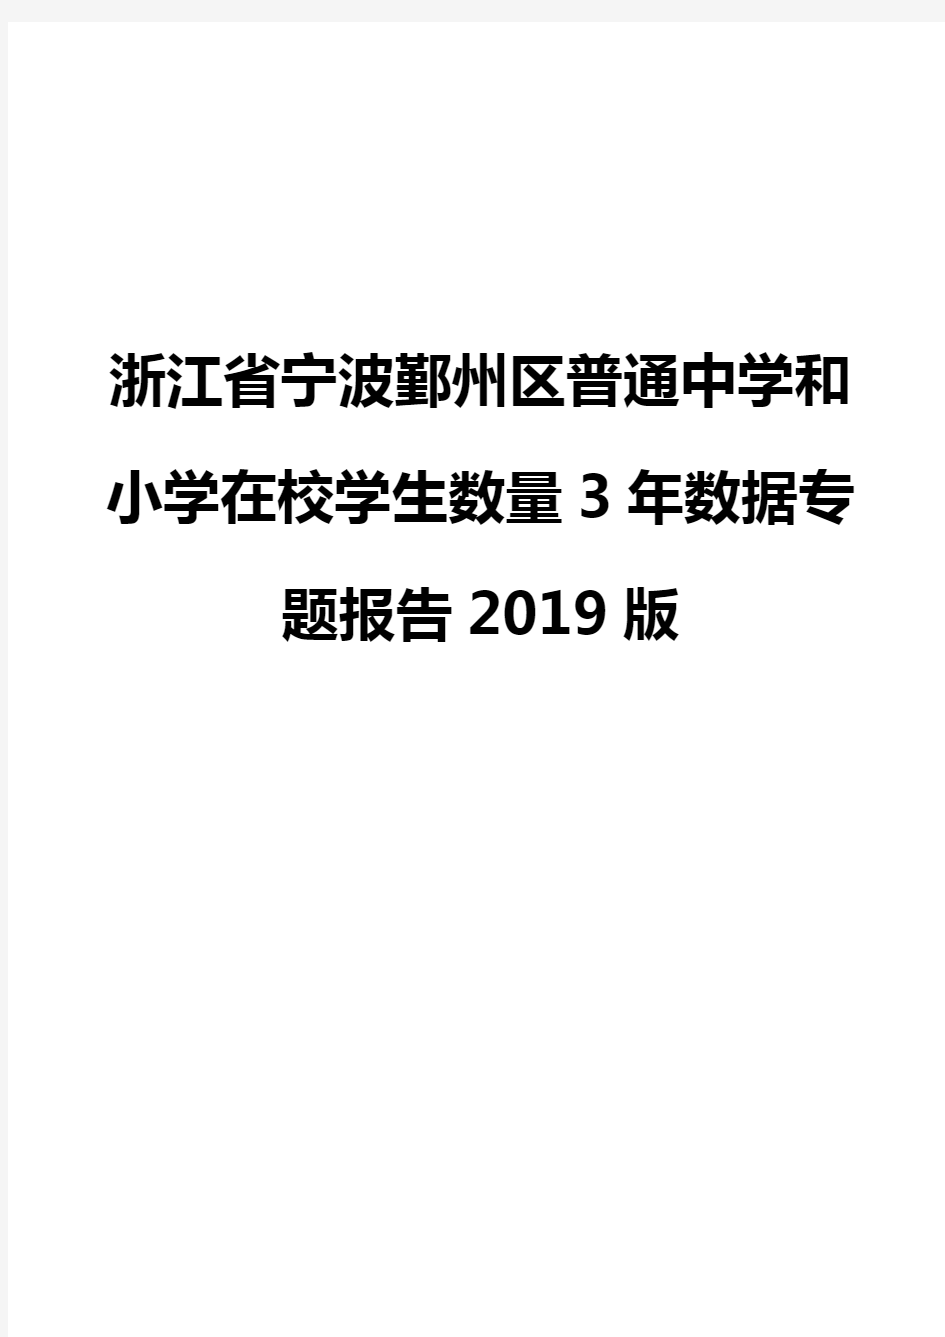 浙江省宁波鄞州区普通中学和小学在校学生数量3年数据专题报告2019版